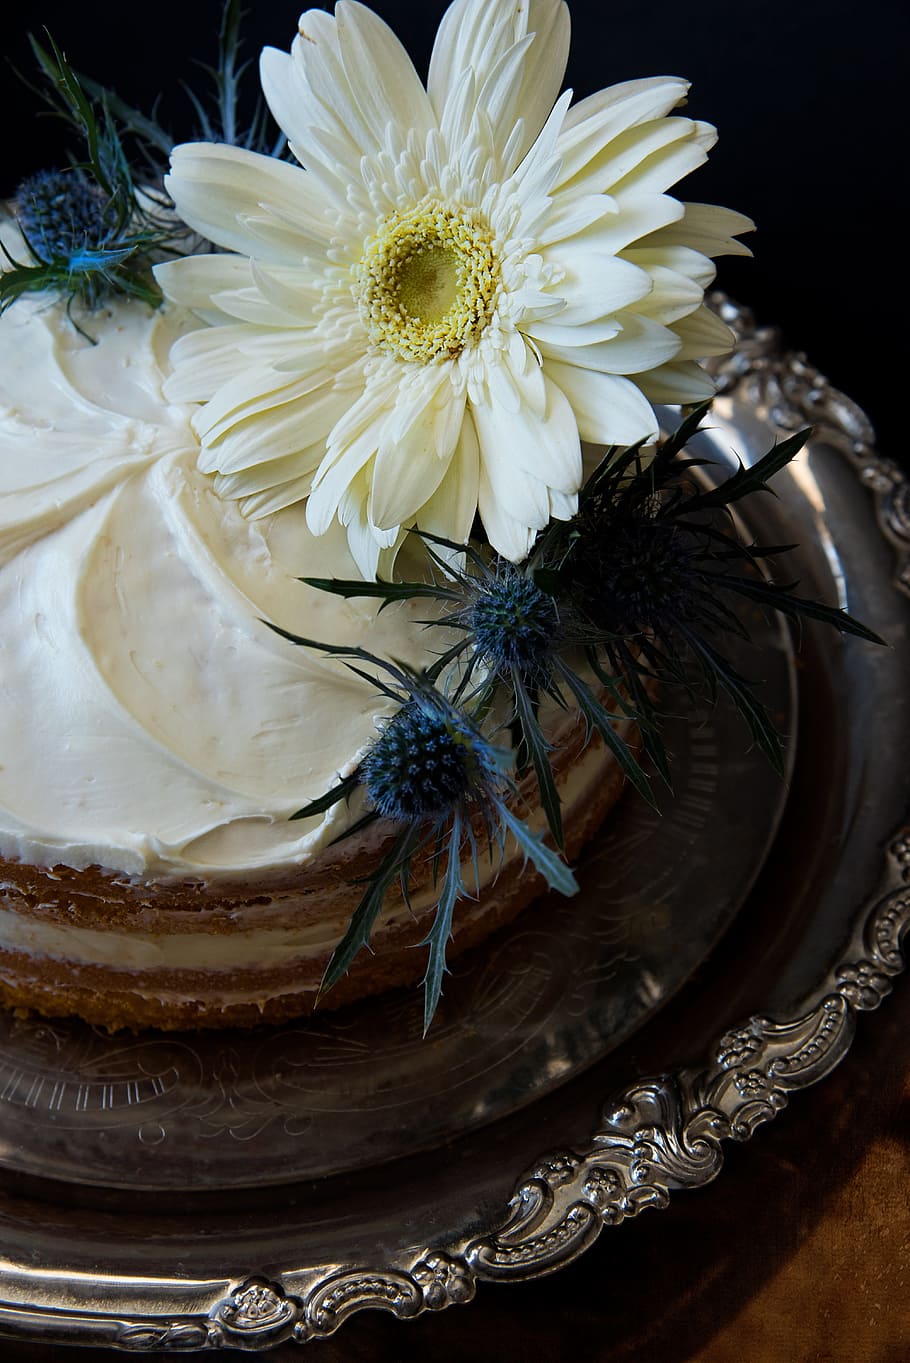 white, cake, flowers, dessert, tasty, bakery, baking, bake, tray, silver